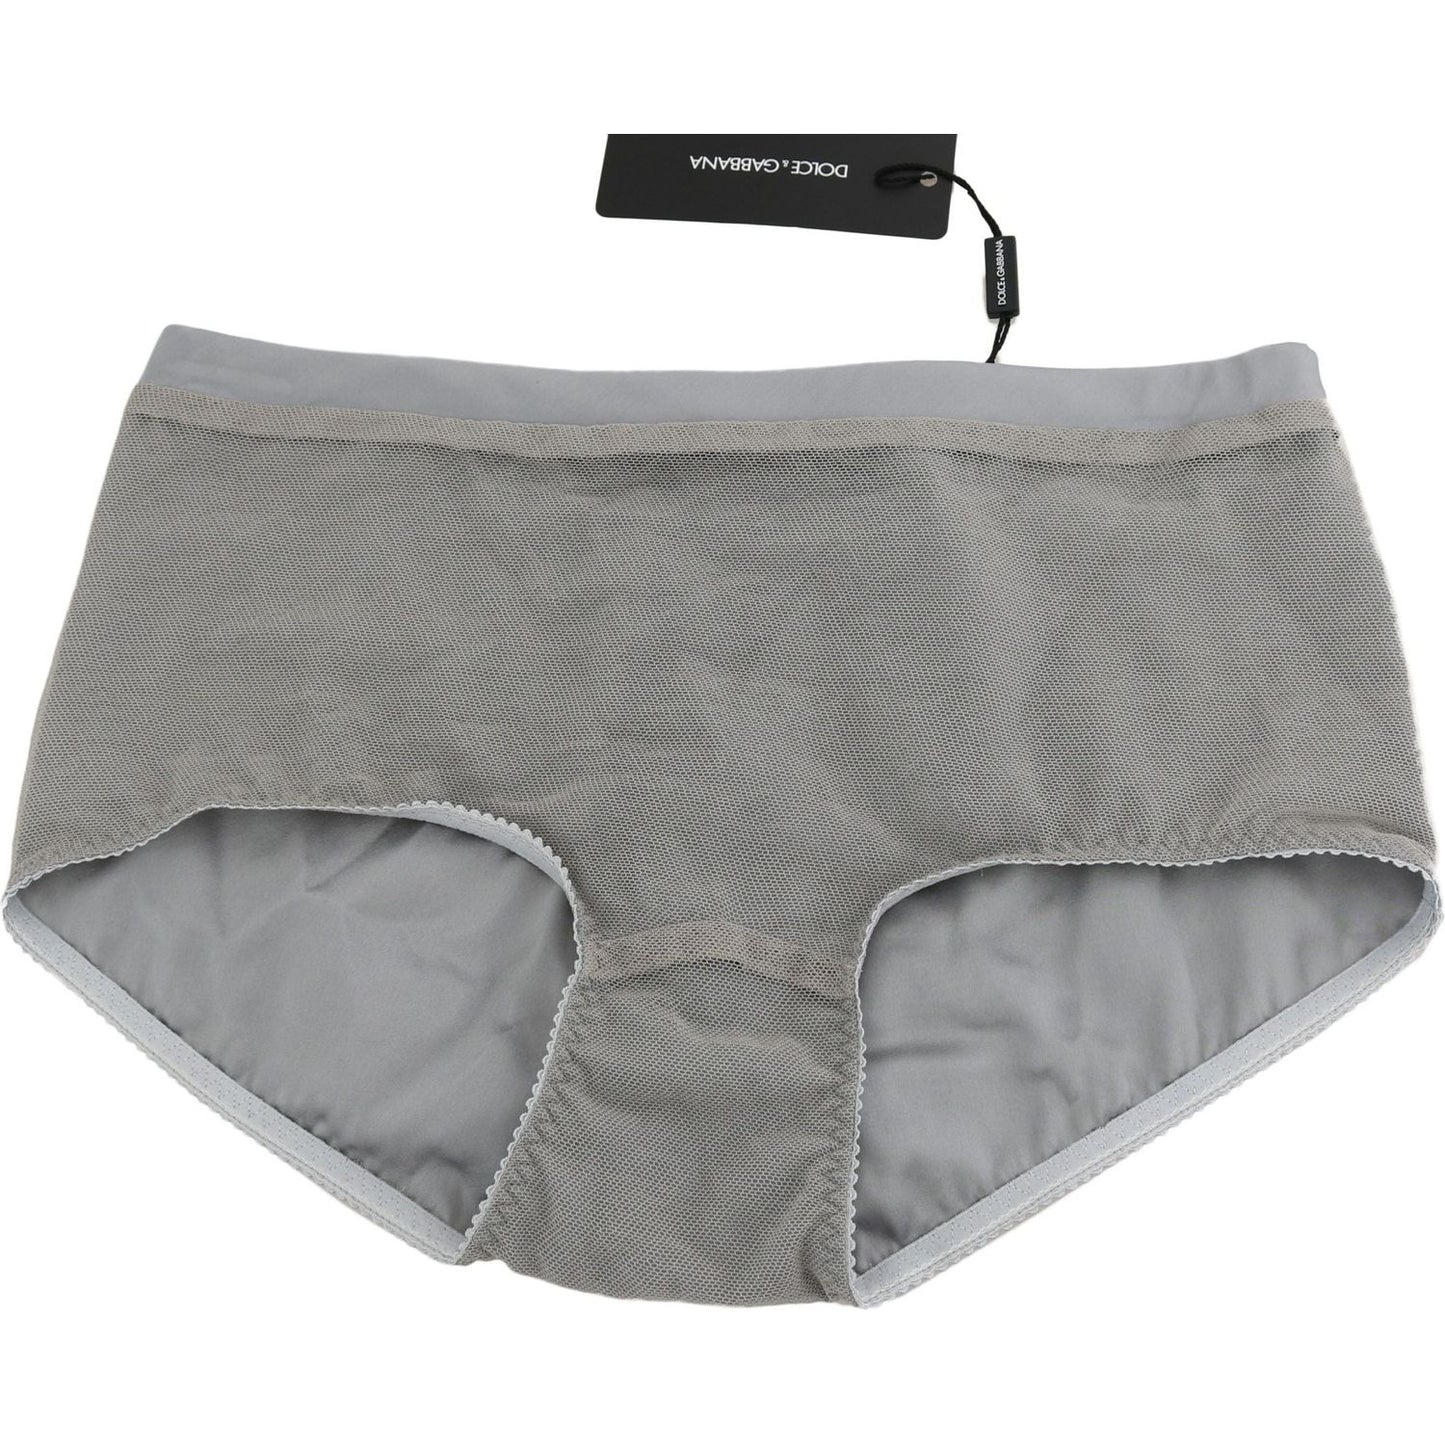 Dolce & Gabbana Shimmering Silver Stretch Cotton Underwear underwear-silver-with-net-silk-bottoms IMG_3704-scaled-4ae973ef-014.jpg